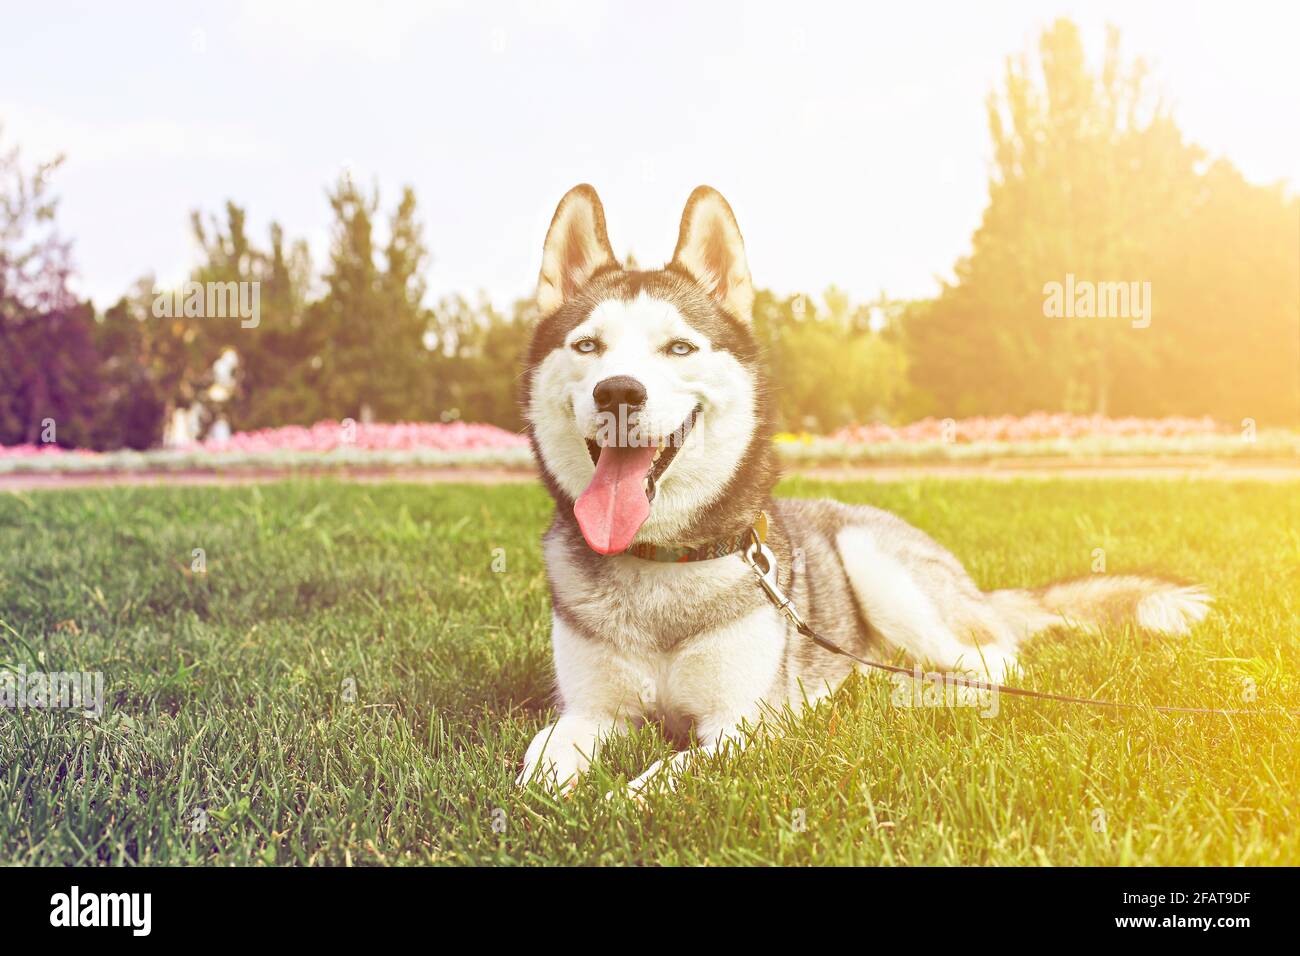 Lustiger sibirischer Husky Hund mit spitzen Ohren und langer Zunge, die auf einem Spaziergang hervorsteht. Leashed inländischen reinrassigen Haustier ruht auf grünen mawed Gras Rasen von Cit Stockfoto